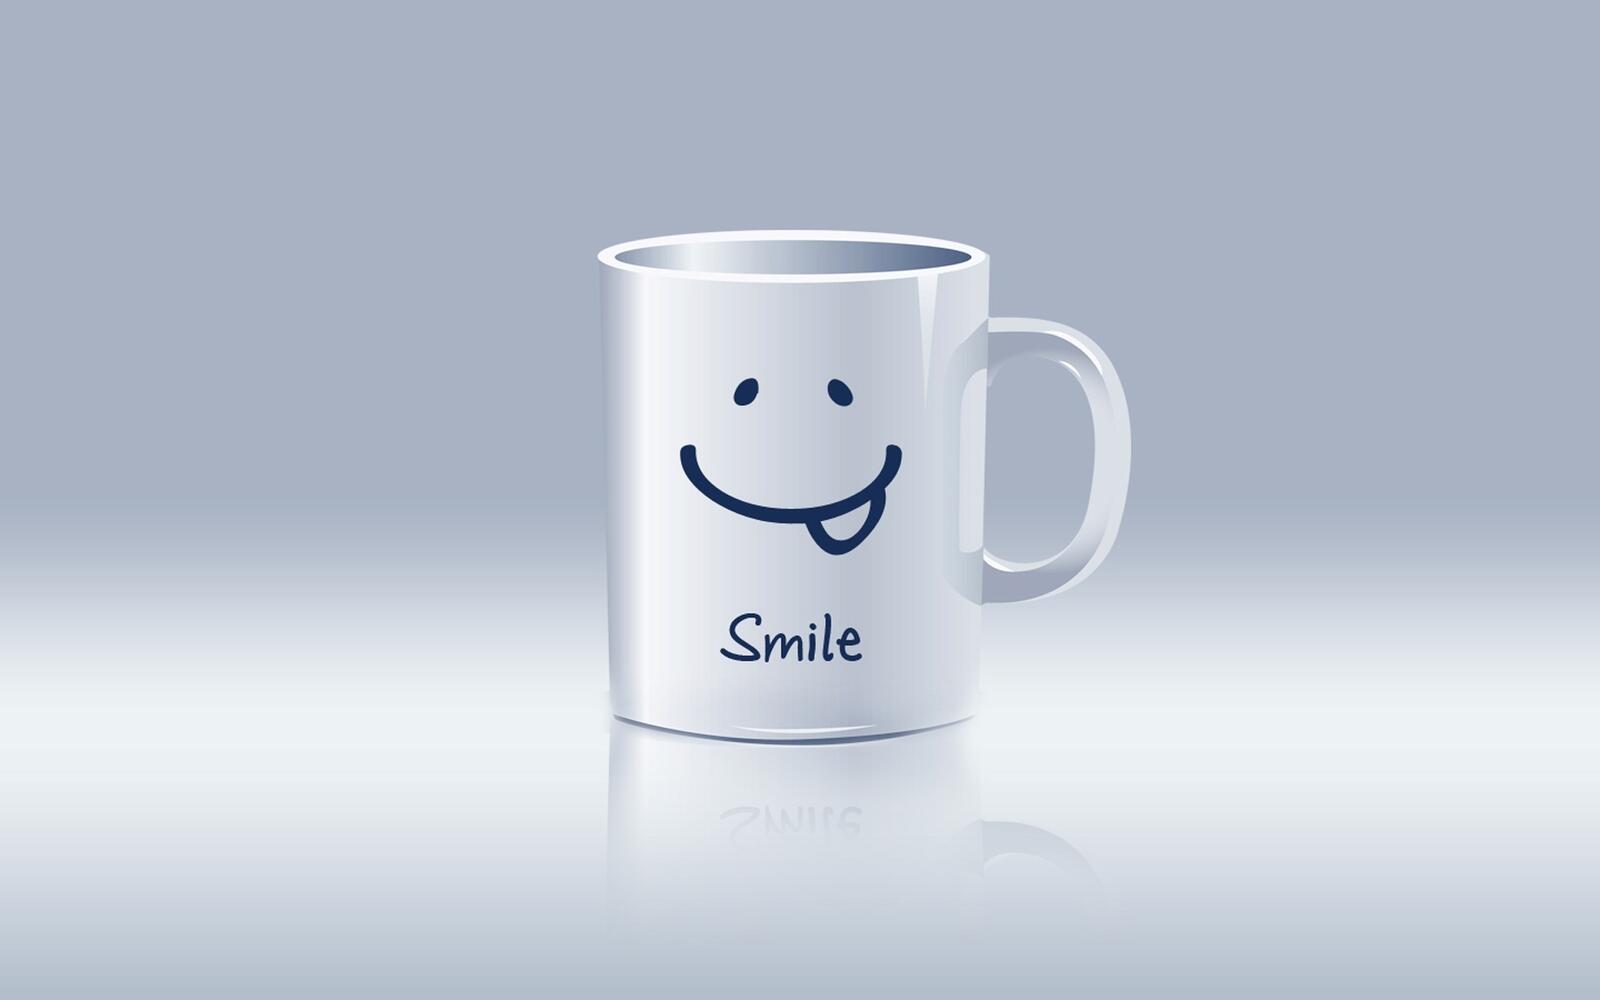 Wallpapers mug smile smiley on the desktop